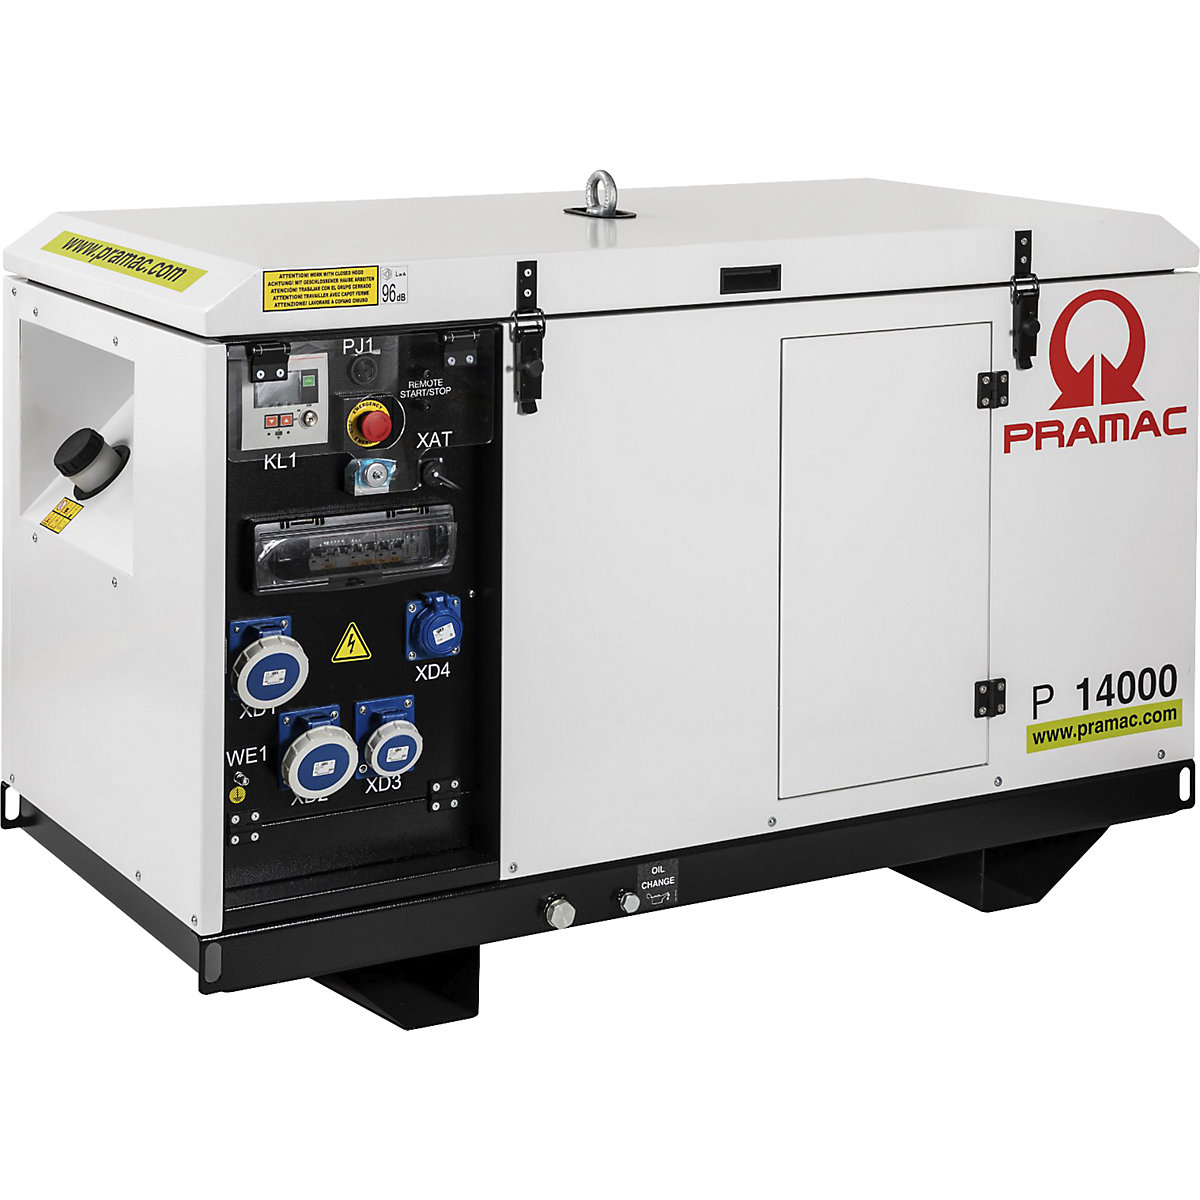 P series power generator, diesel, 400/230 V – Pramac